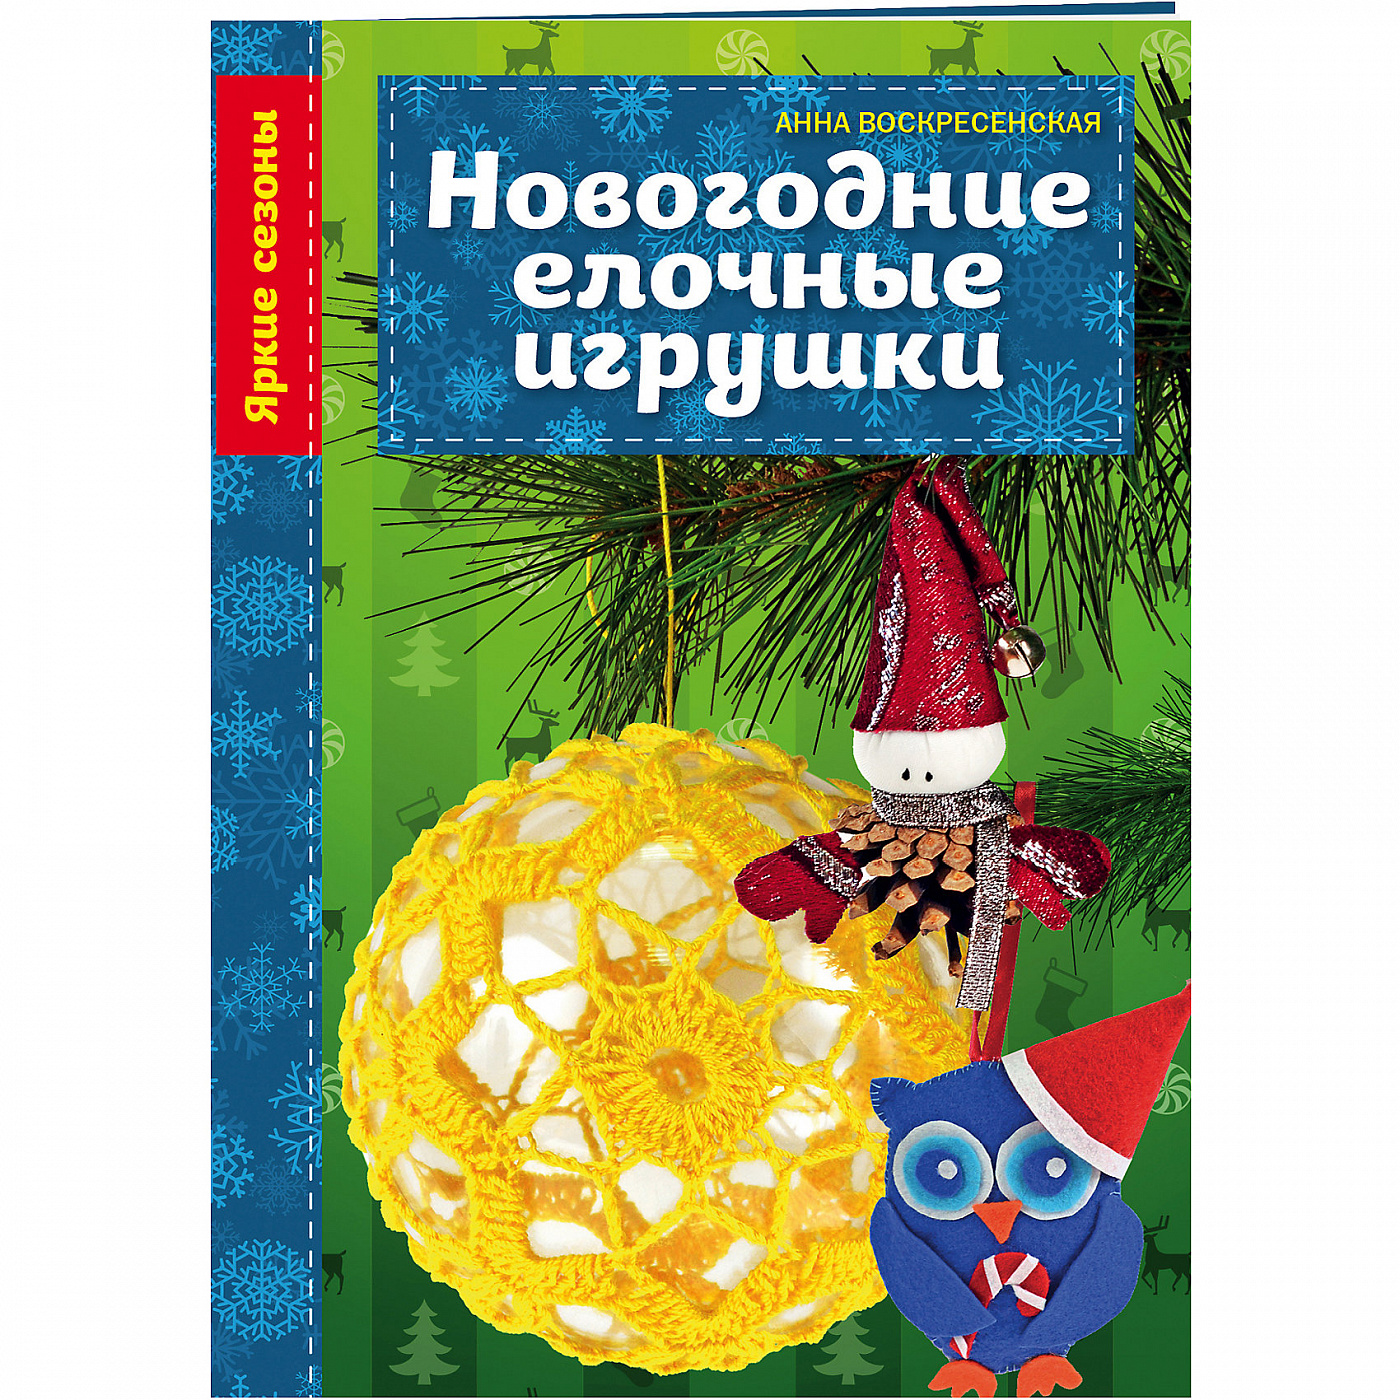 Каталог книг от Book24 - купить самую популярную литературу в Киеве, Украине | Цены, отзывы